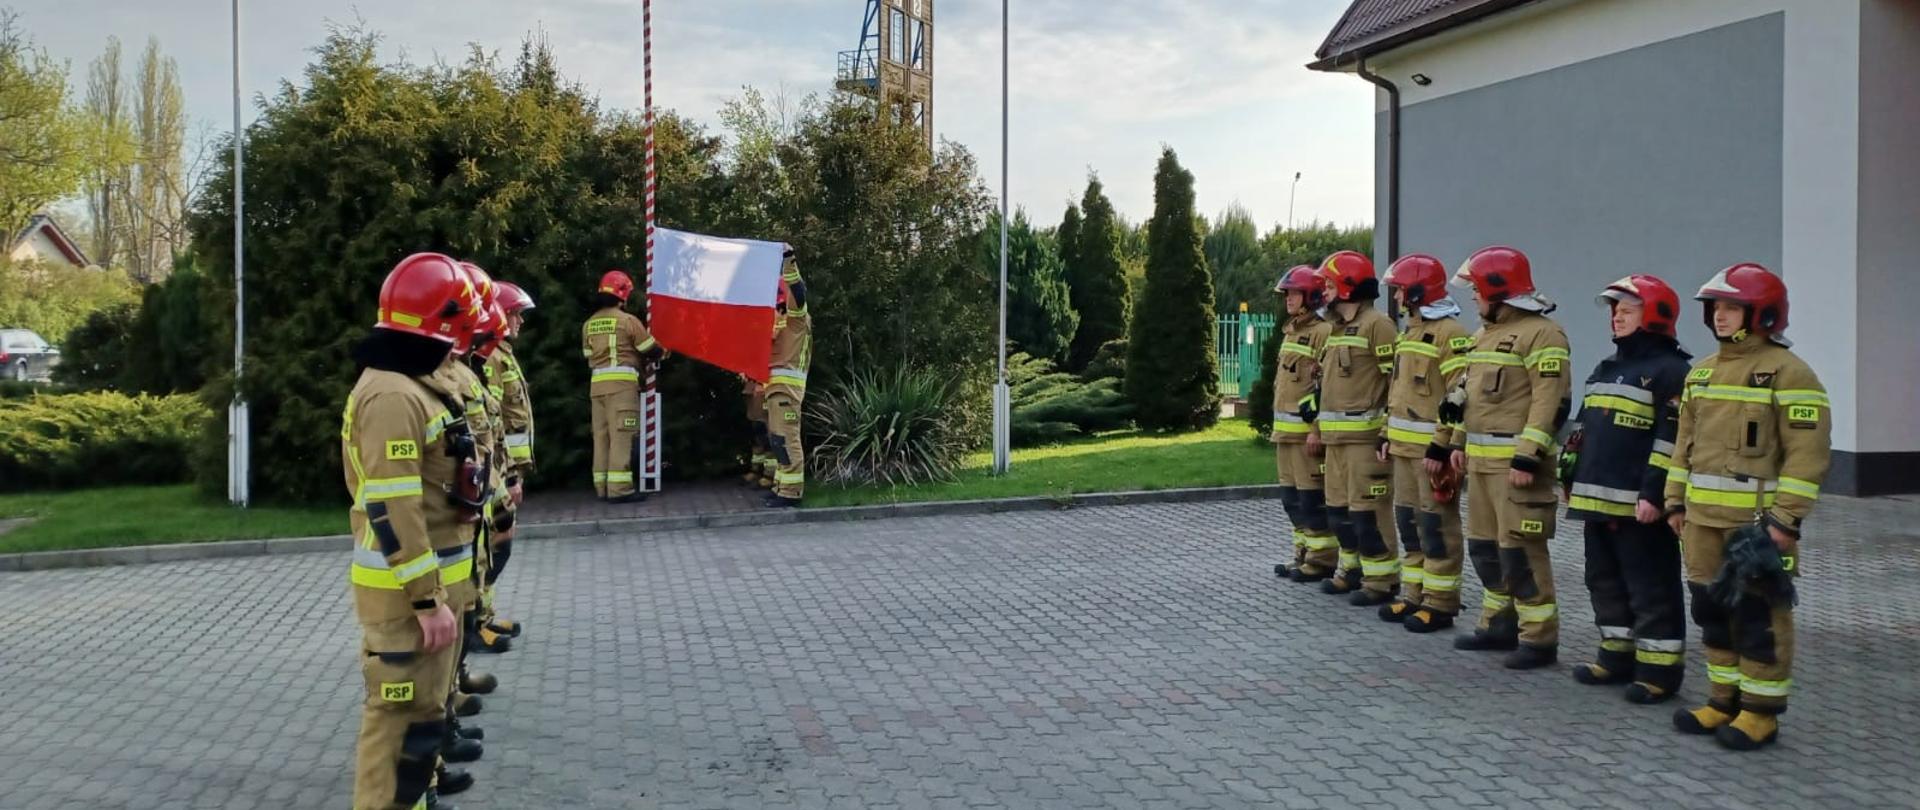 Na zdjęciu widać dwie grupy strażaków podczas uroczystej zmiany służby. Wszyscy strażacy maja założone czerwone hełmy. Jeden strażak ubrany jest w ciemny strój a reszta w żółte. Strażacy stoją w dwóch rzędach naprzeciwko siebie. W tle widać strażaków w żółtych strojach i czerwonych hełmach, którzy zawieszają flagę Polski na maszcie. Uroczysta zbiórka odbywa się na placu manewrowym przed budynkiem Komendy Powiatowej Państwowej Straży Pożarnej w Łęczycy. W tle widać krzewy. Jest widno.